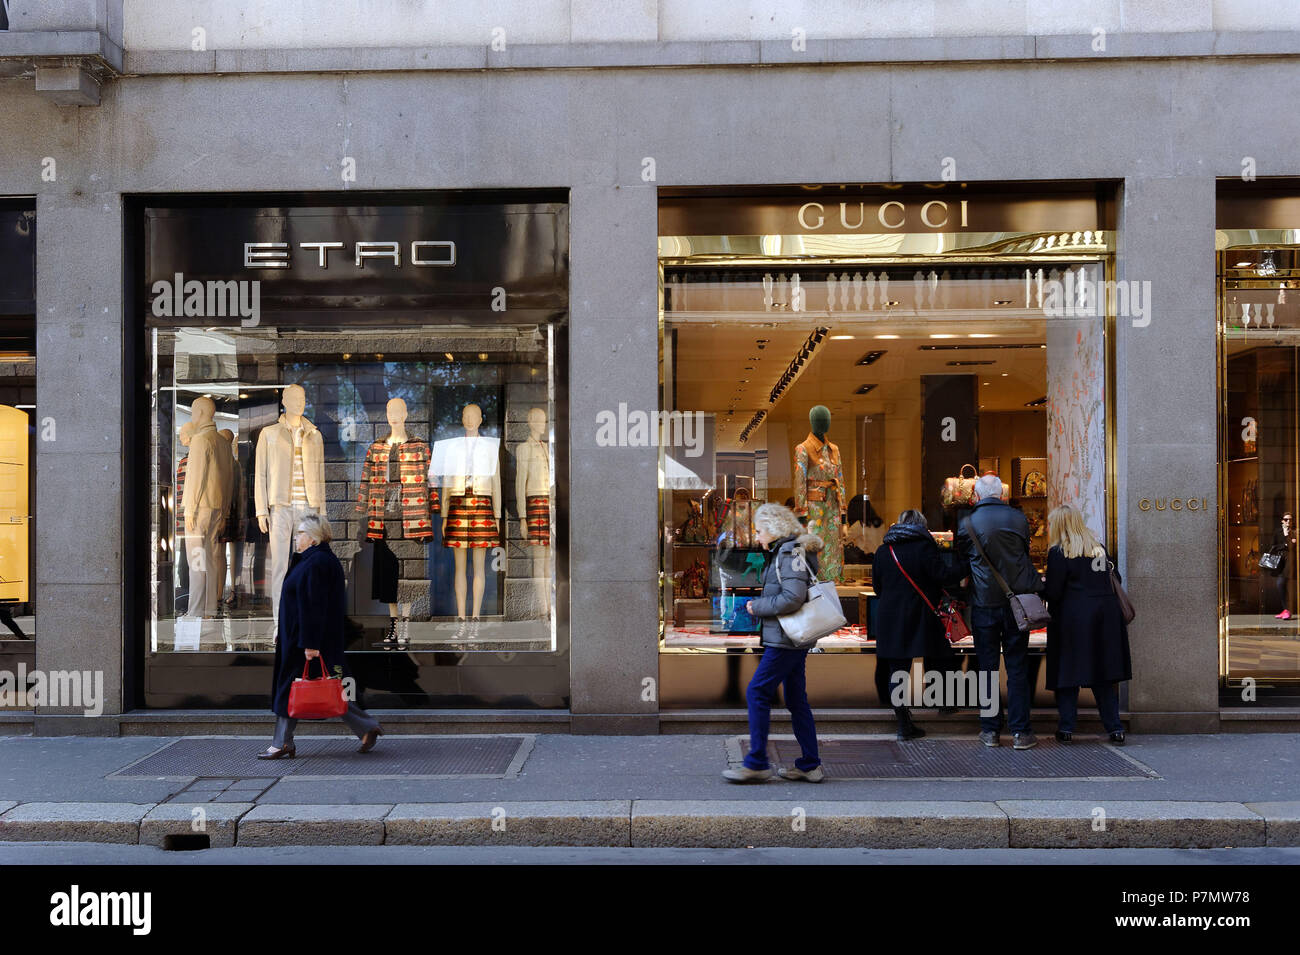 Italy, Lombardy, Milan, Fashion Quadrilateral, Gucci store in Via Monte  Napoleone Stock Photo - Alamy